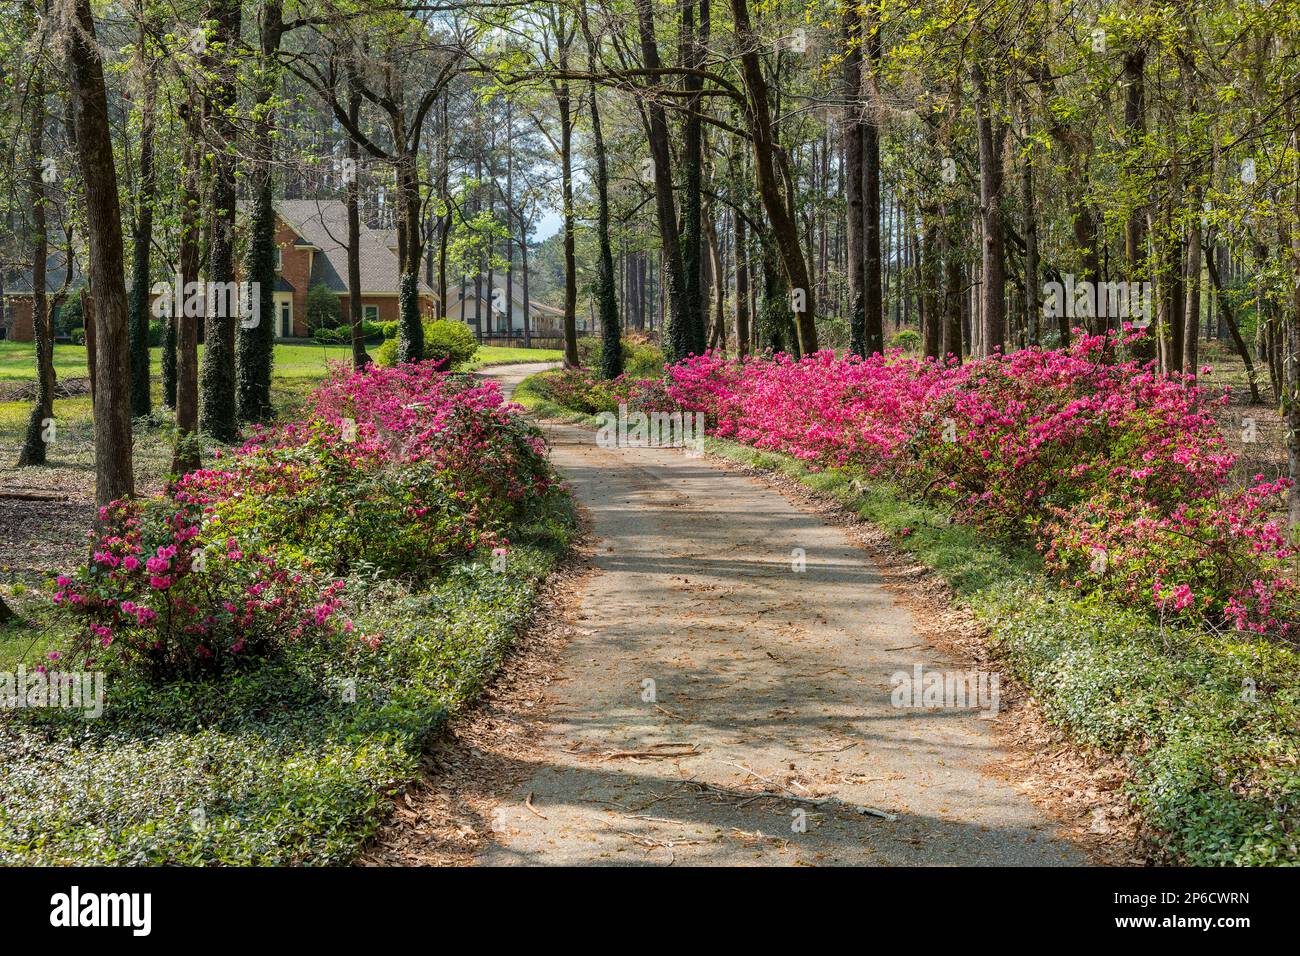 Azaleas rosadas en flor o en flor, bordean el camino de entrada sinuoso a una finca rural en Alabama, EE.UU. Foto de stock